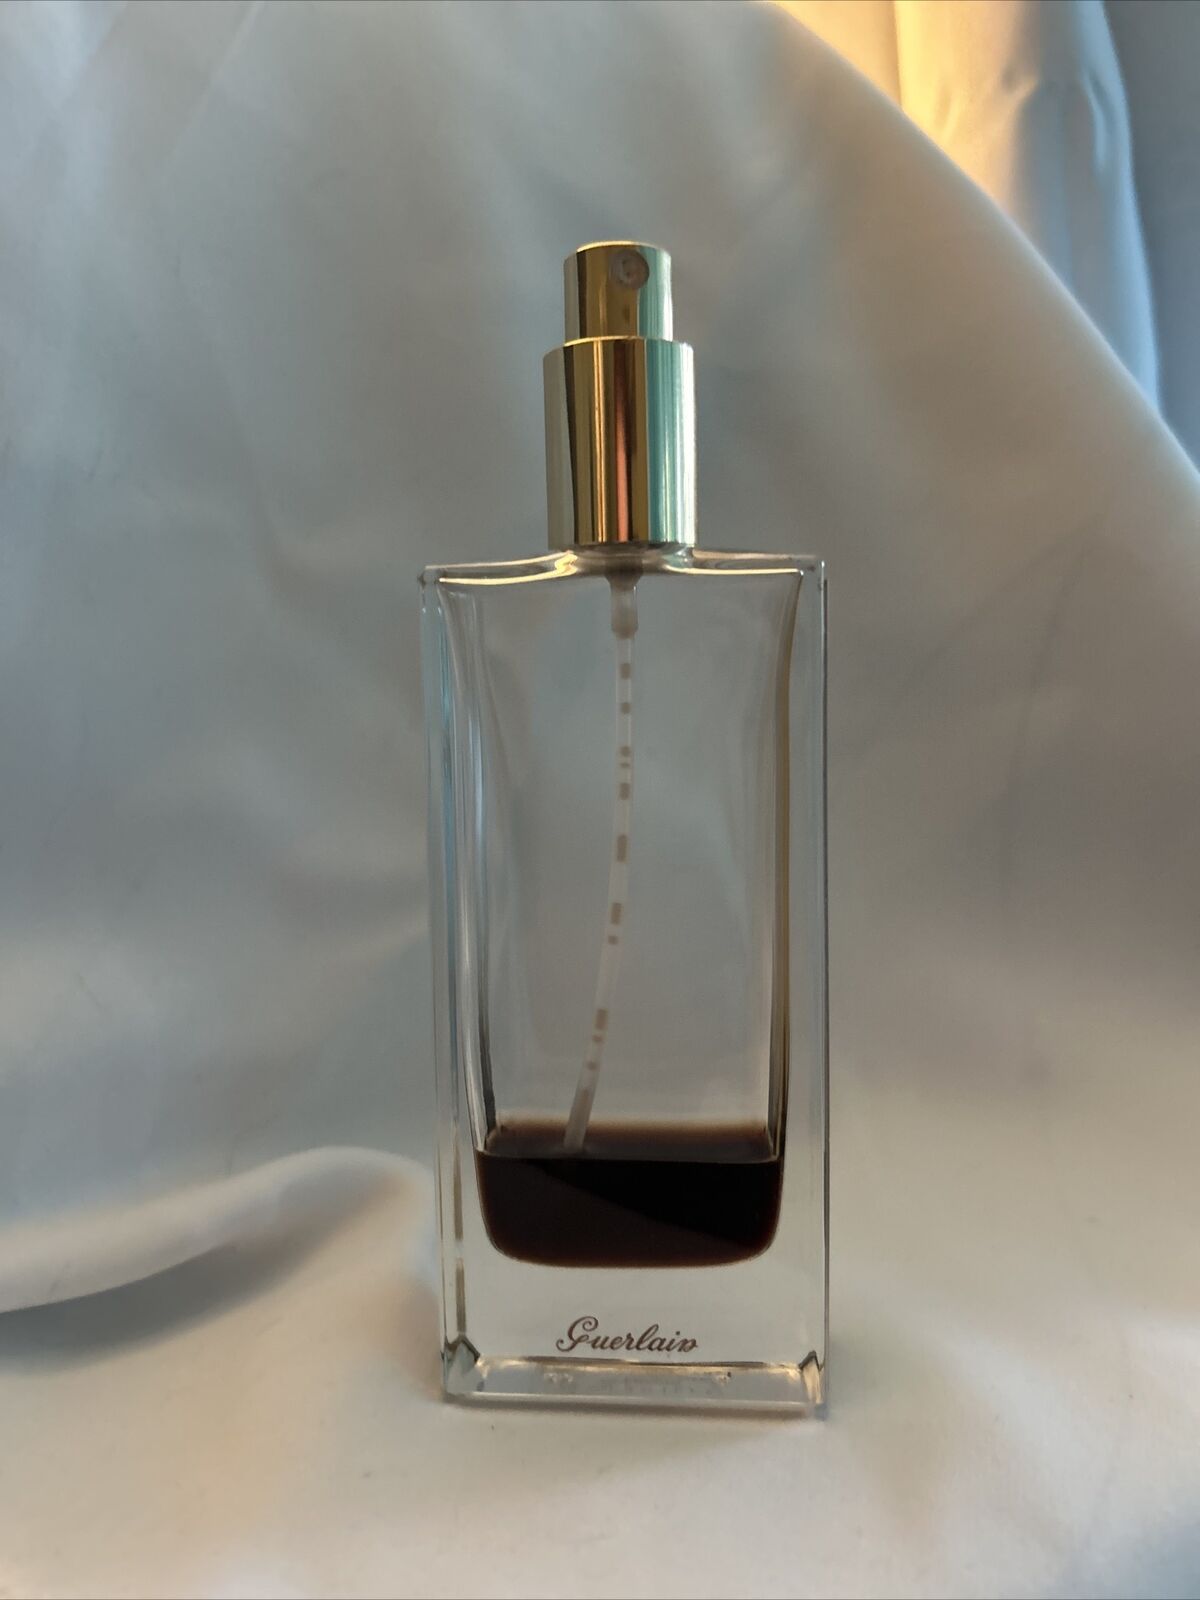 Guerlain Cuir Beluga Vintage Perfume